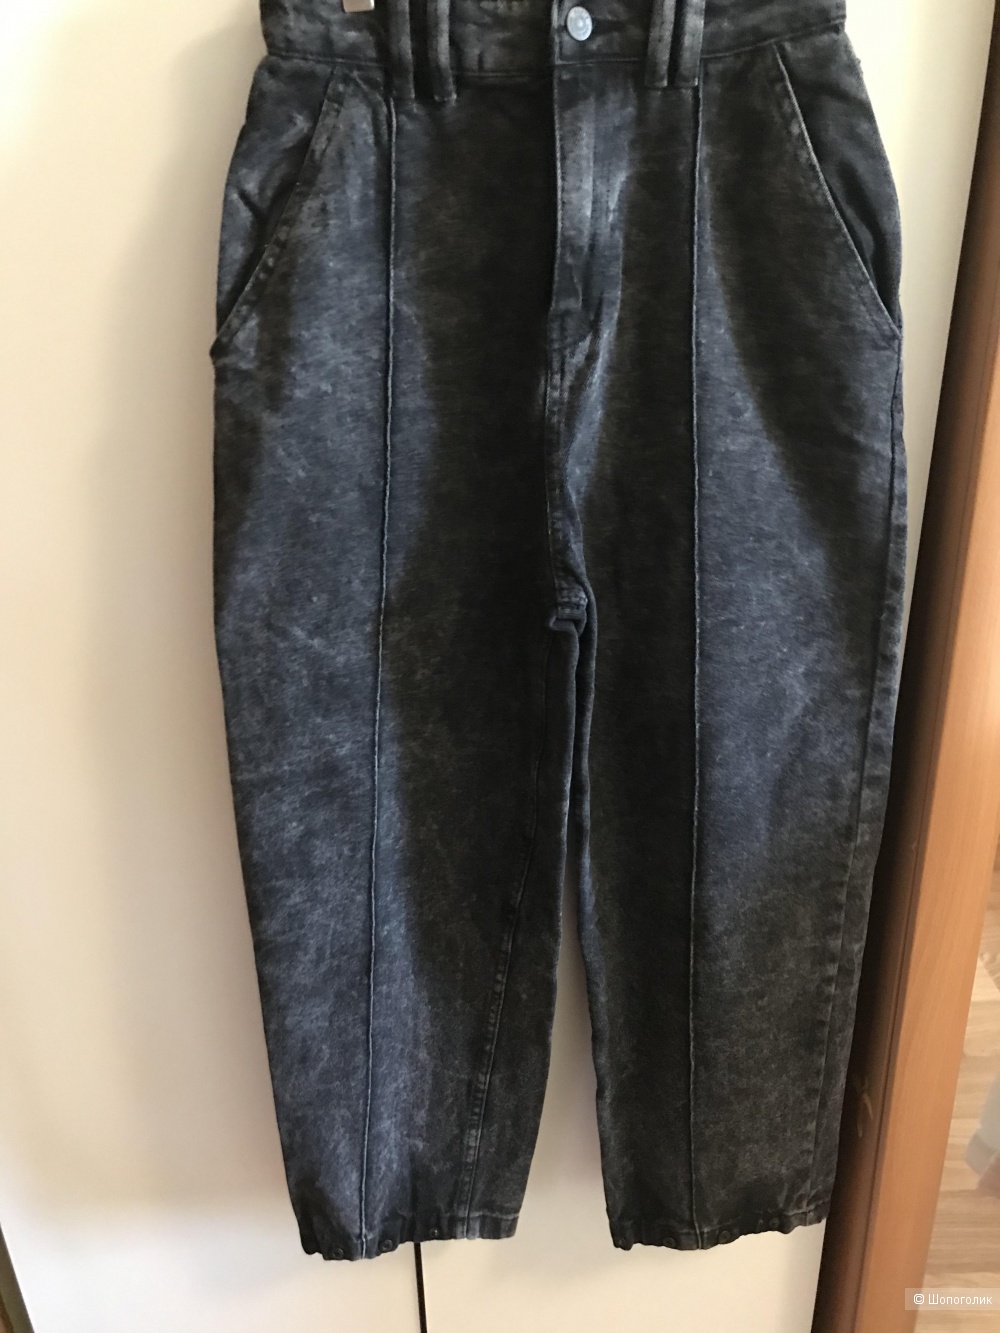 Новые джинсы Zara 34 размер